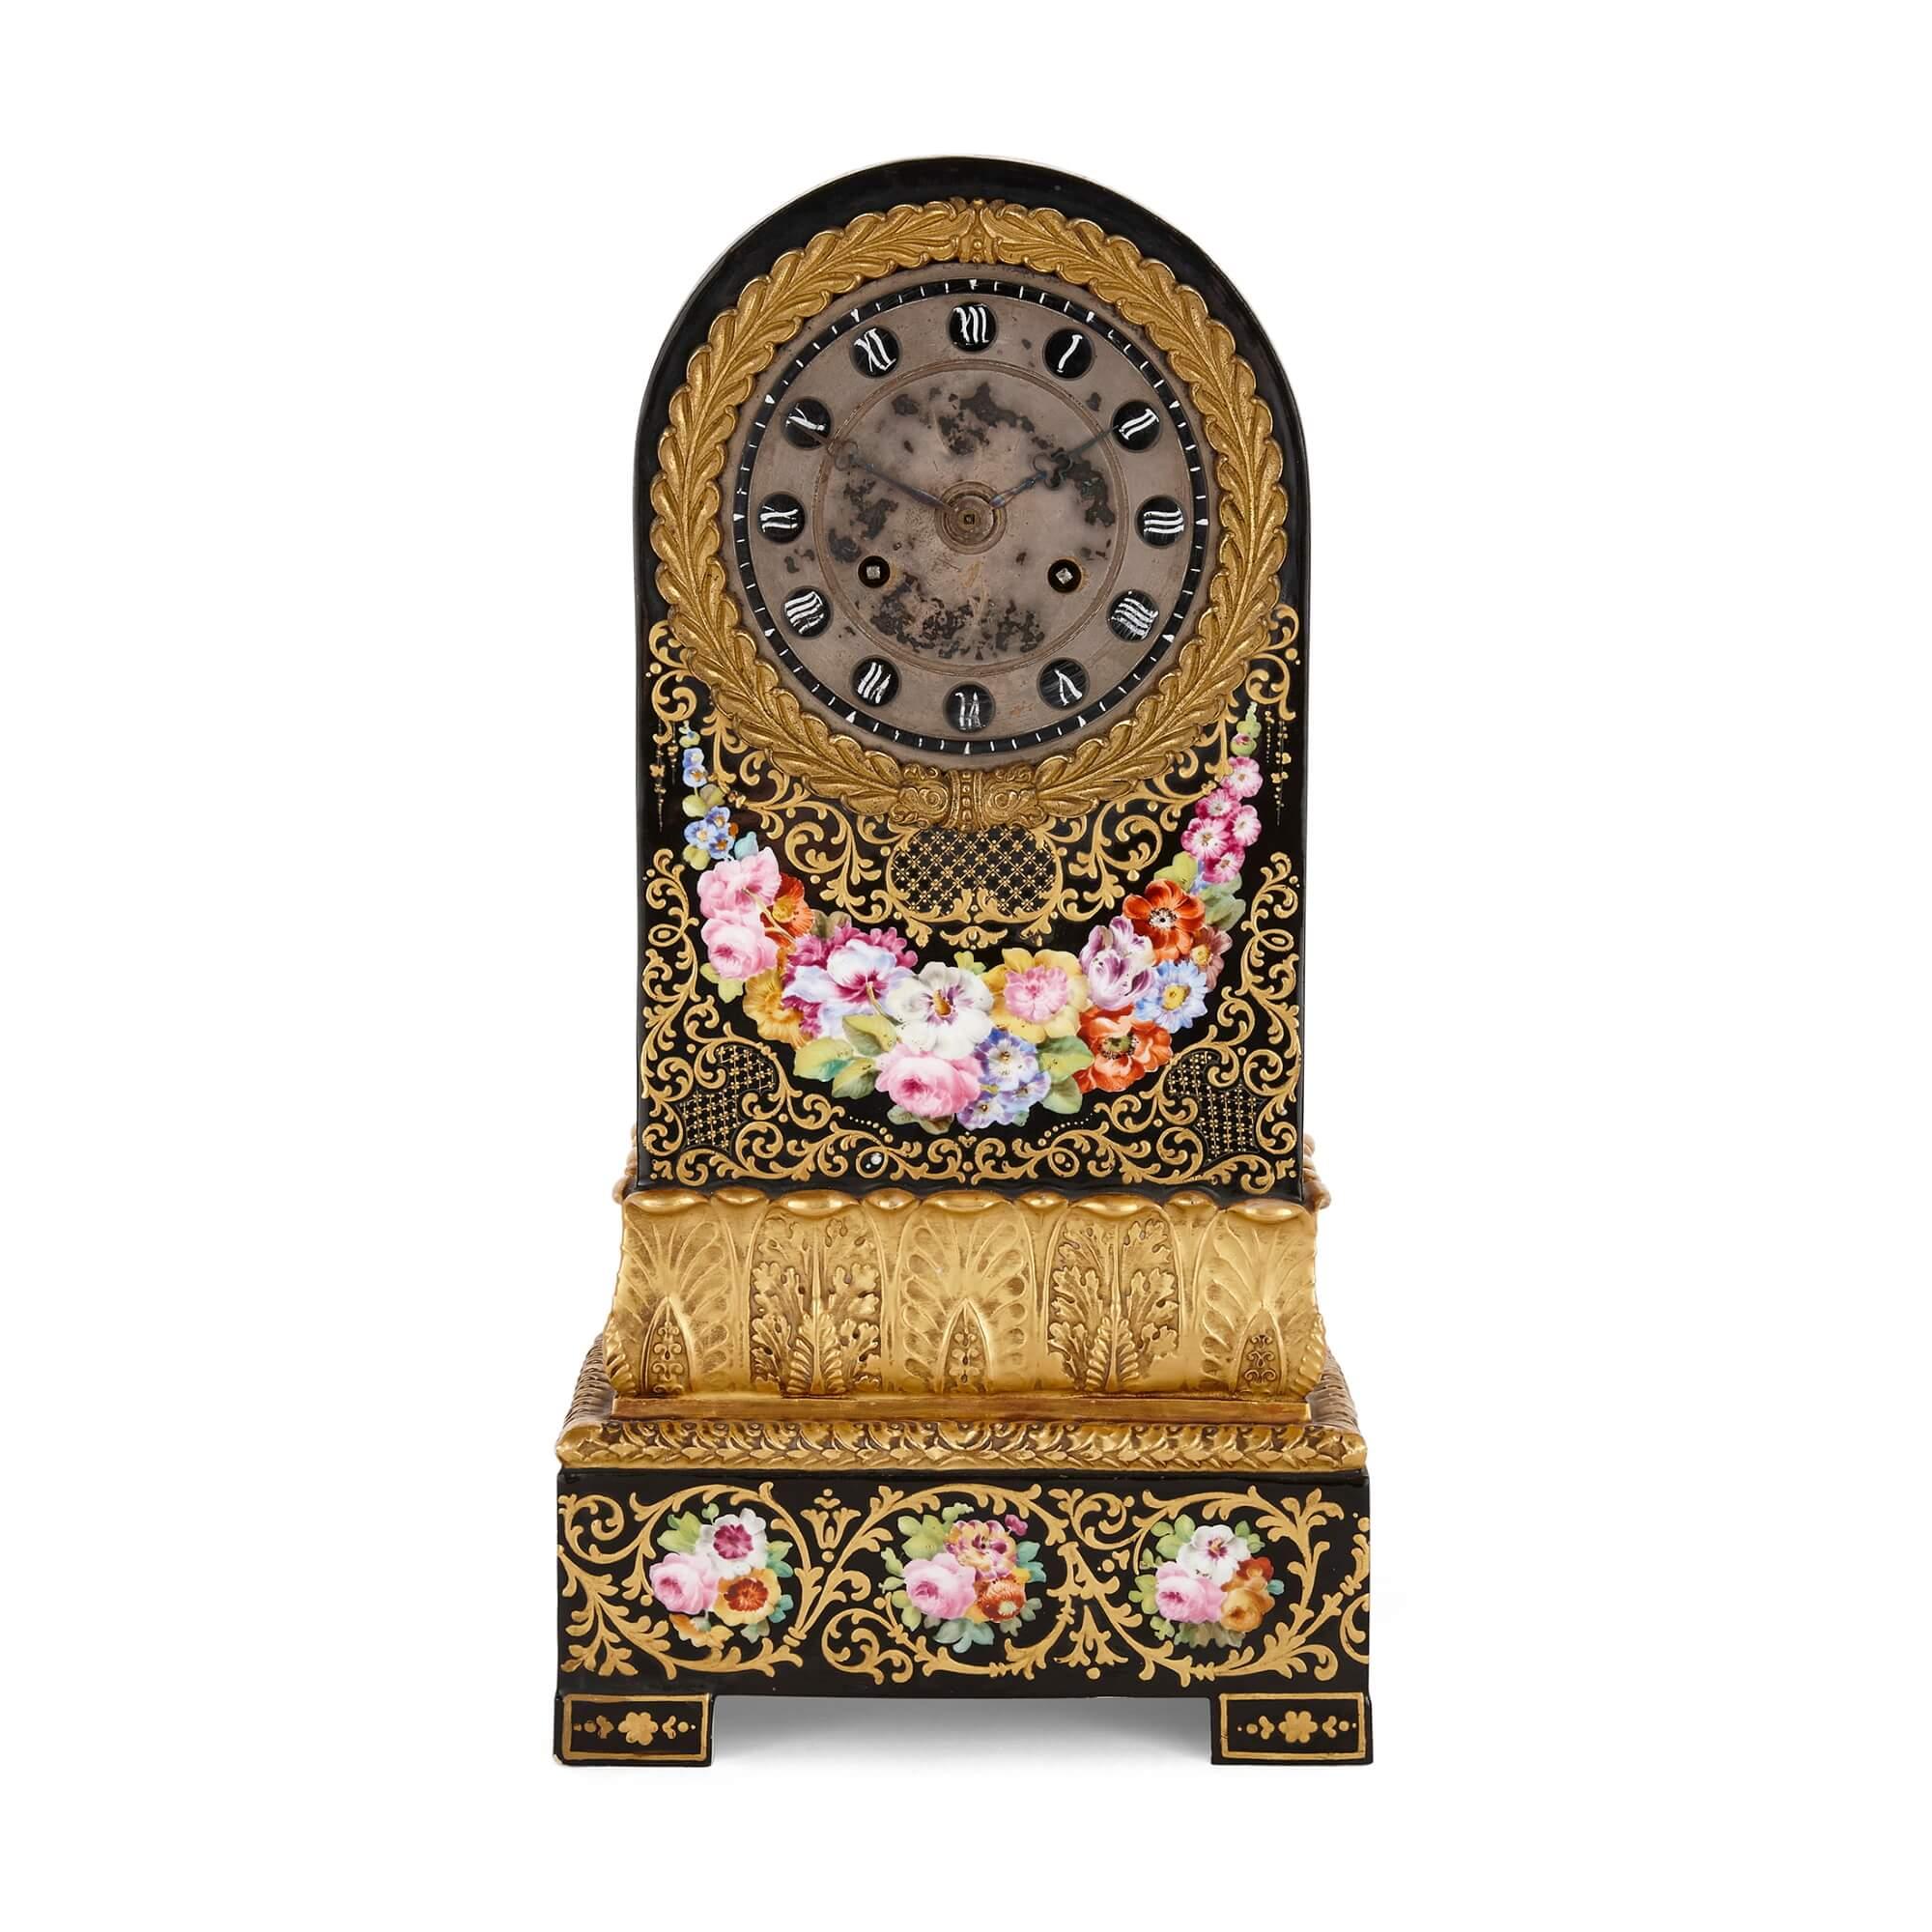 Charles X Periode Ormolu montiert Jacob Petit Porzellan Mantel Uhr
Französisch, um 1825
Höhe 36cm, Breite 18,5m, Tiefe 10,5cm

In einem schönen, paketvergoldeten Porzellangehäuse mit Blumendekor auf schwarzem Grund befindet sich diese schöne